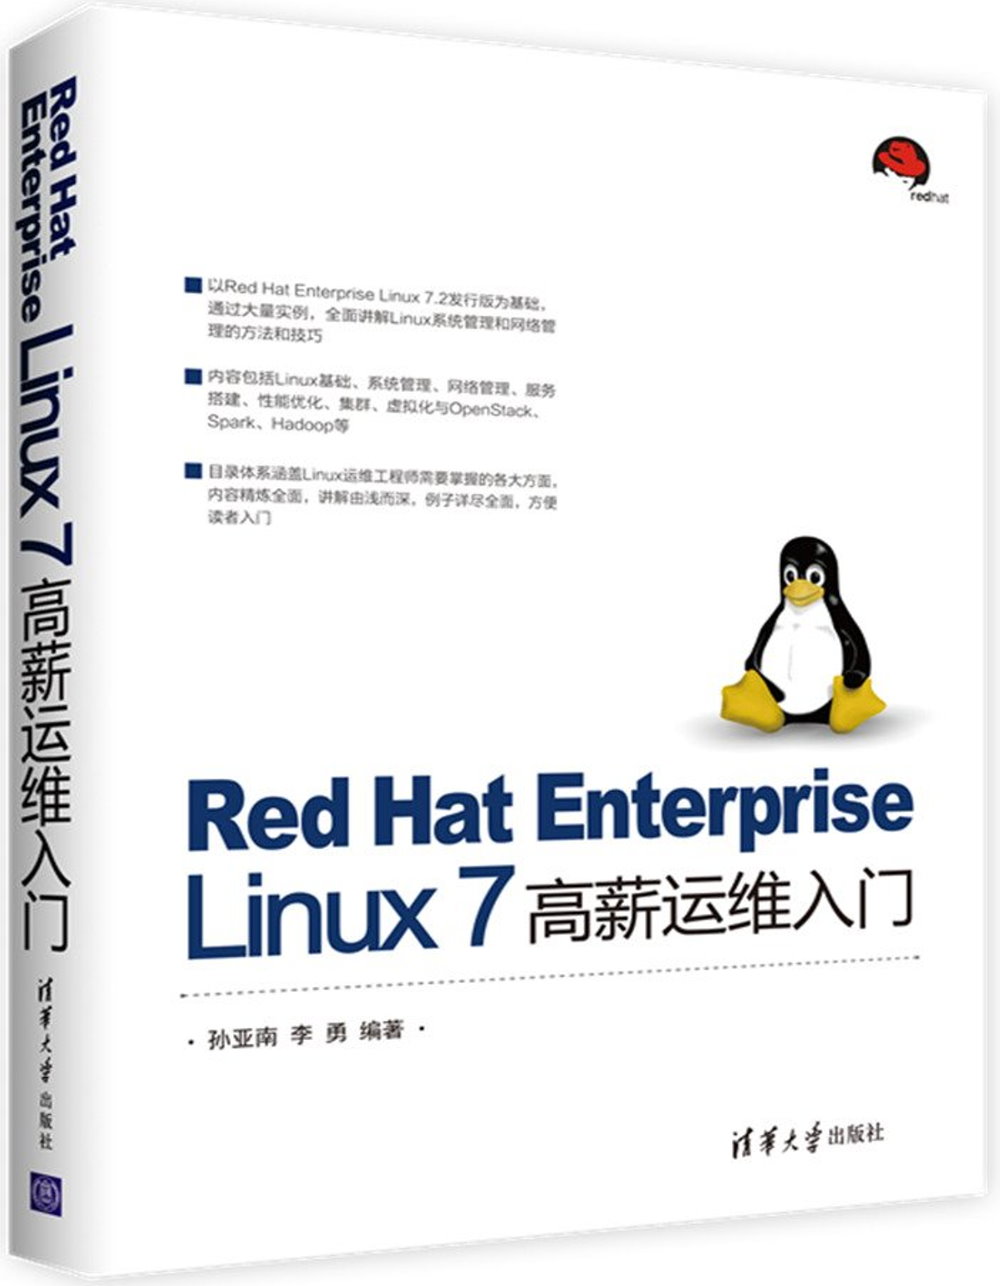 Red Hat Enterprise Linux 7 高薪運維入門